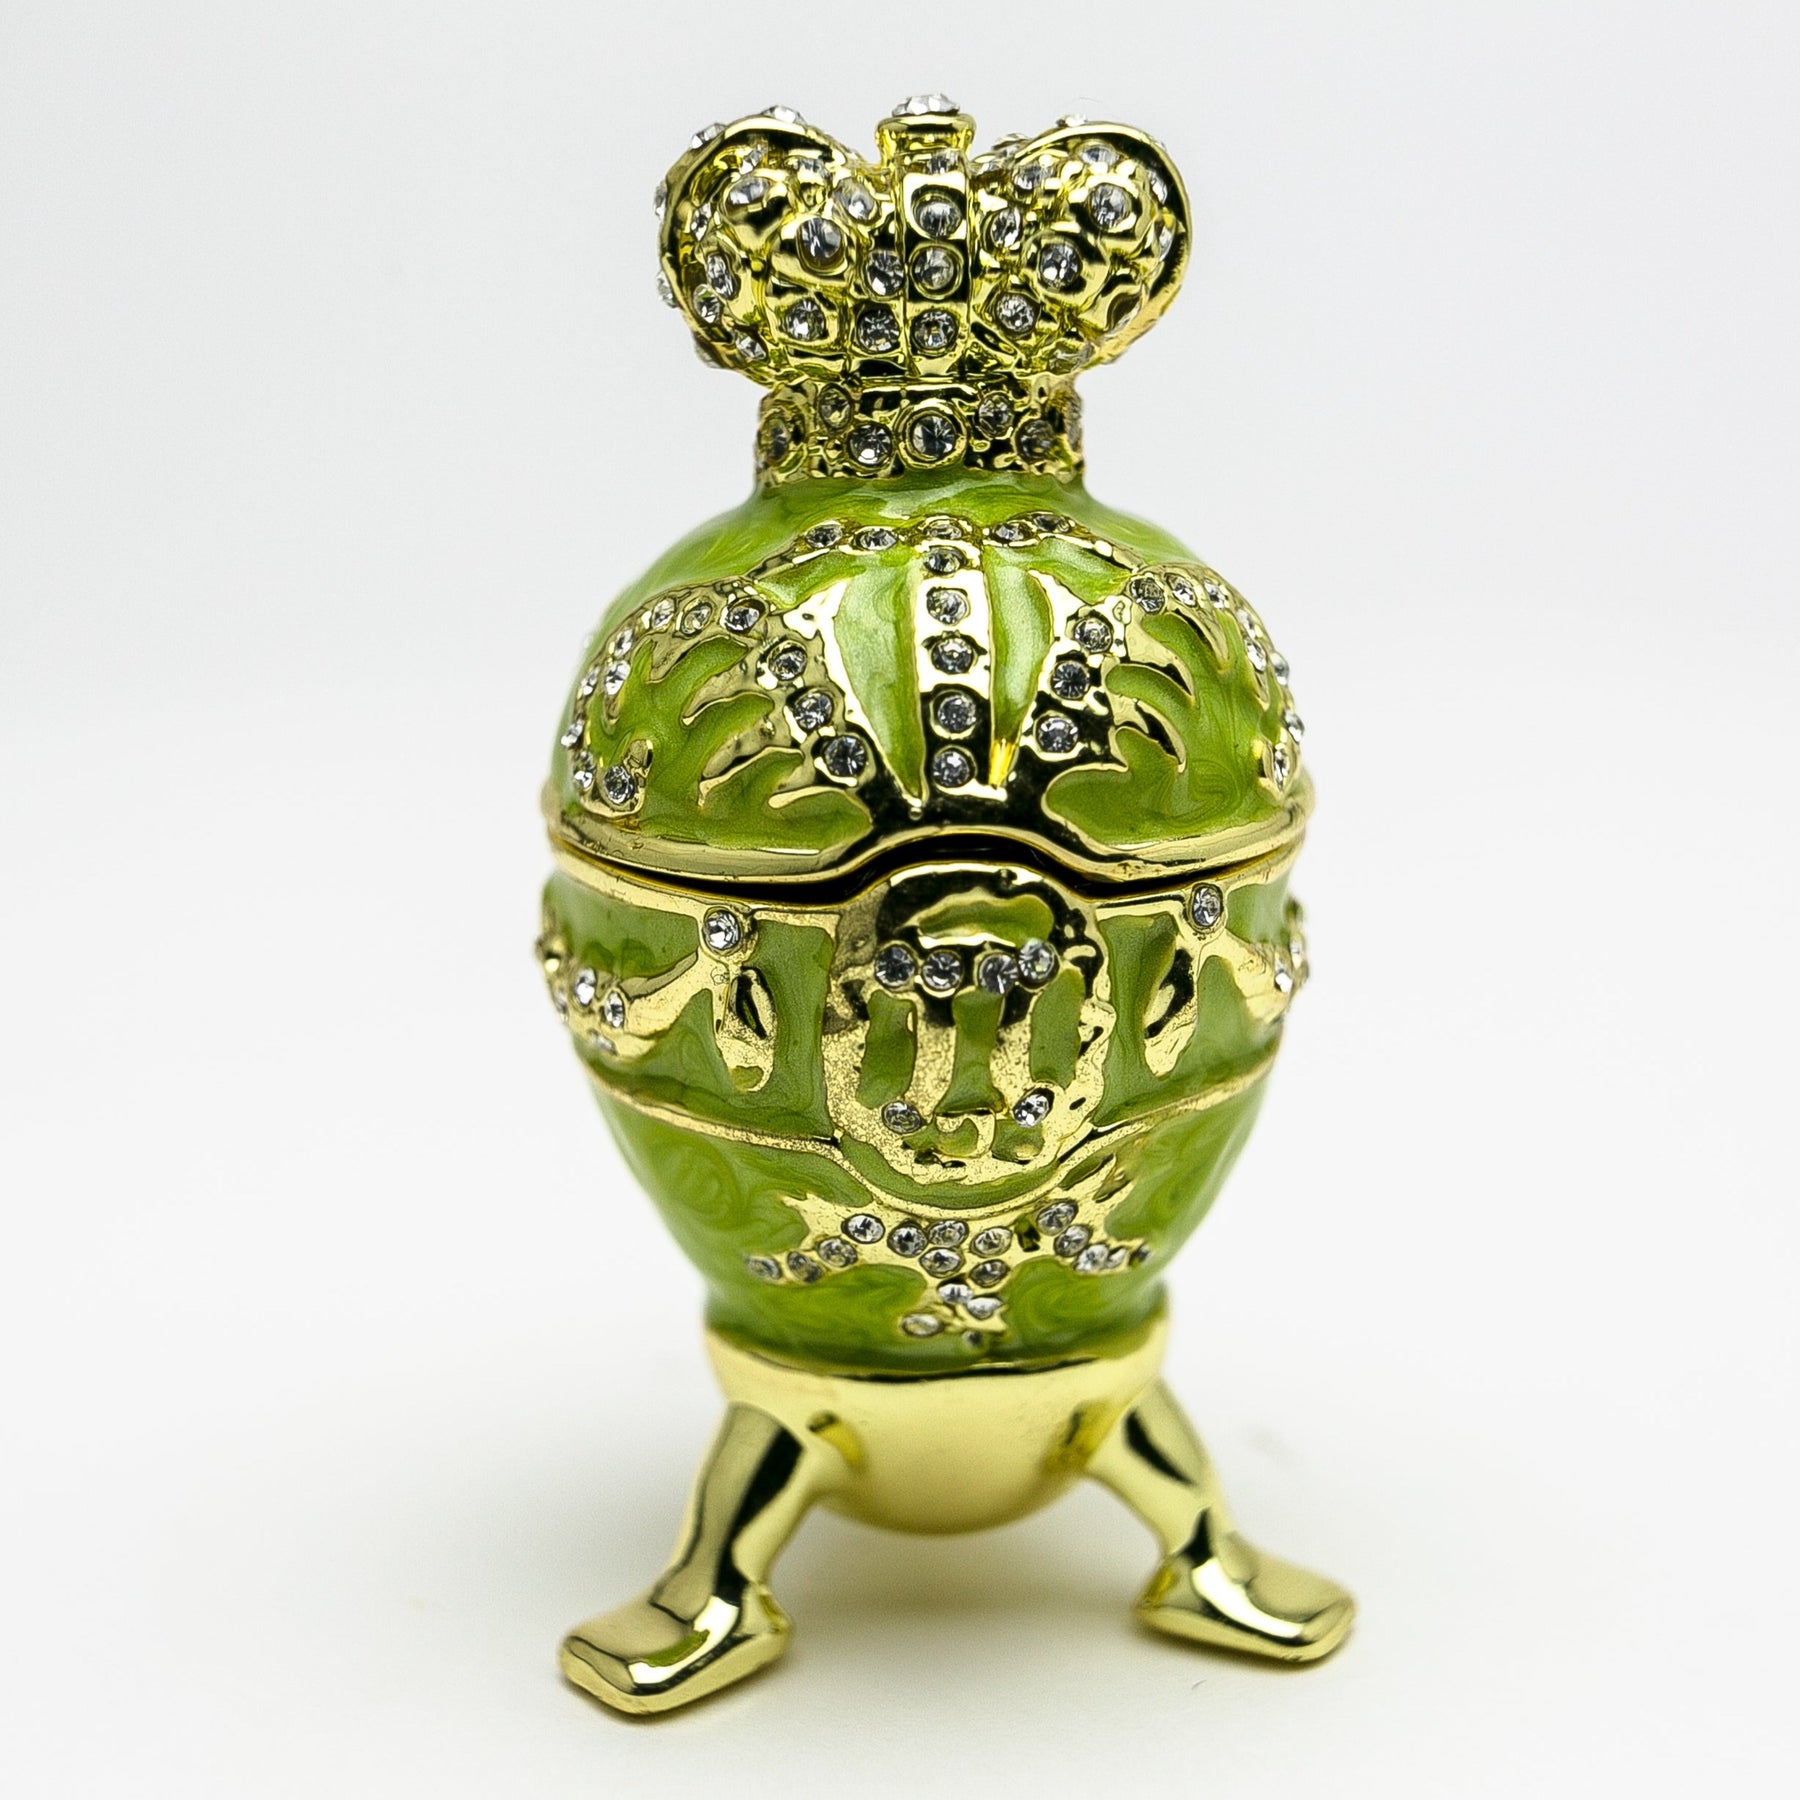 Grünes Fabergé-Ei mit Herz obenauf